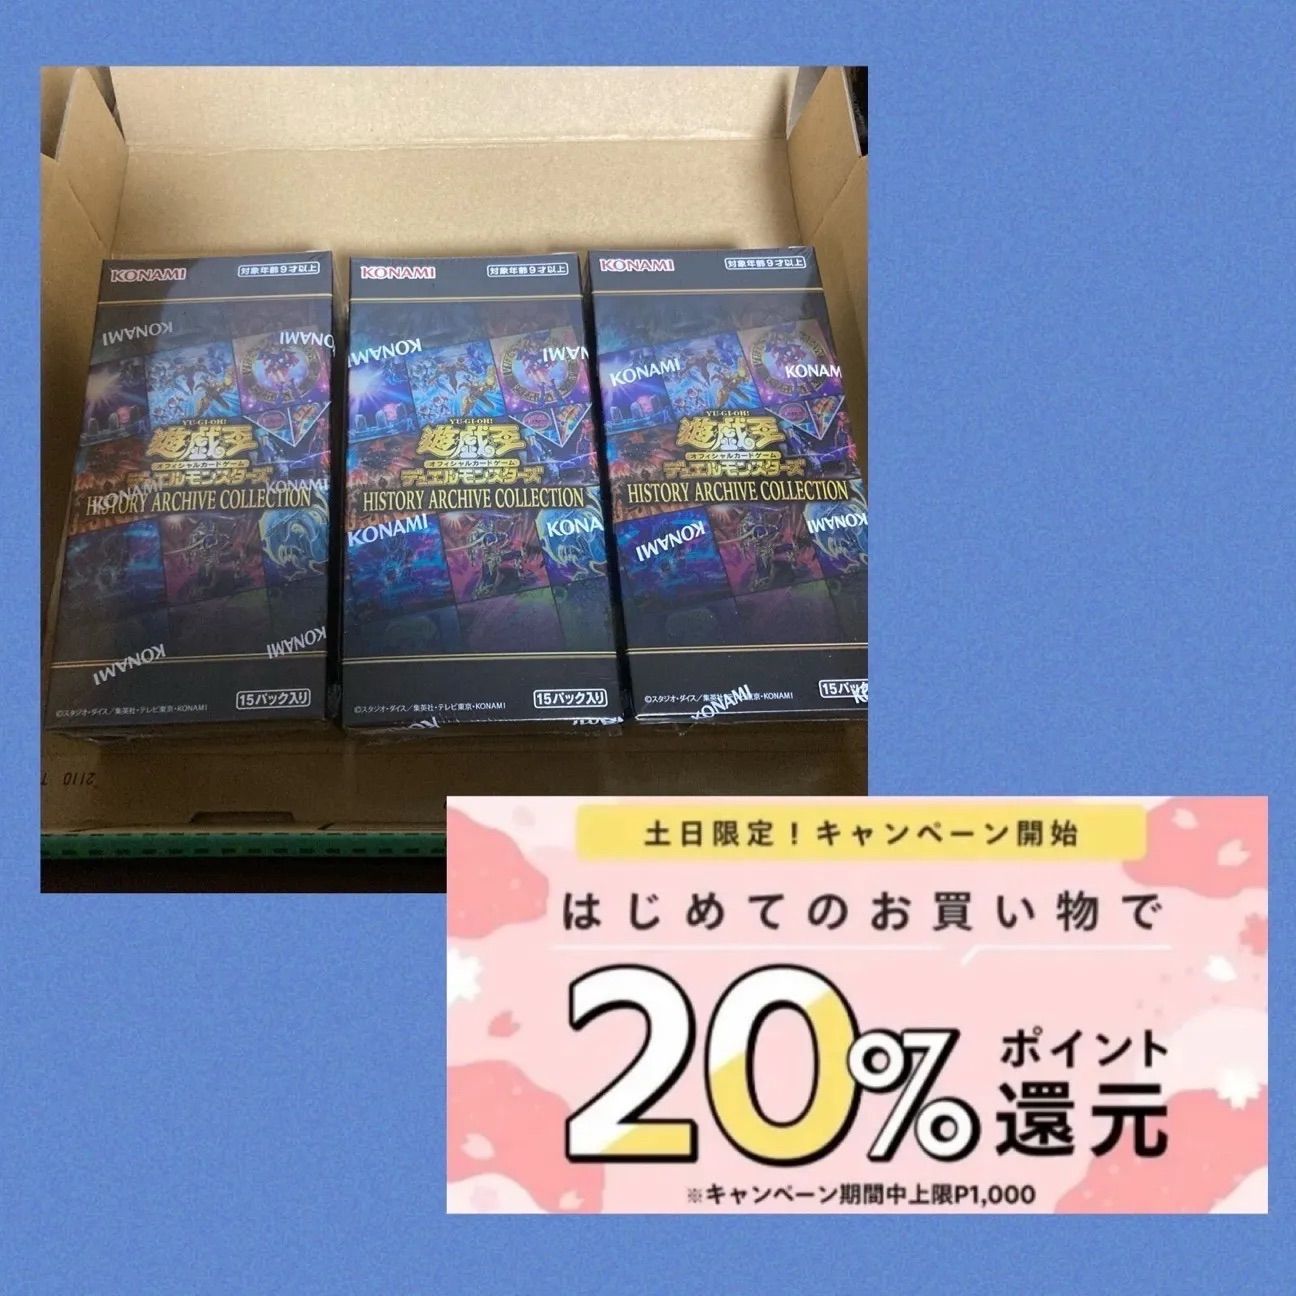 遊戯王 ヒストリーアーカイブコレクション 3BOX シュリンク付き